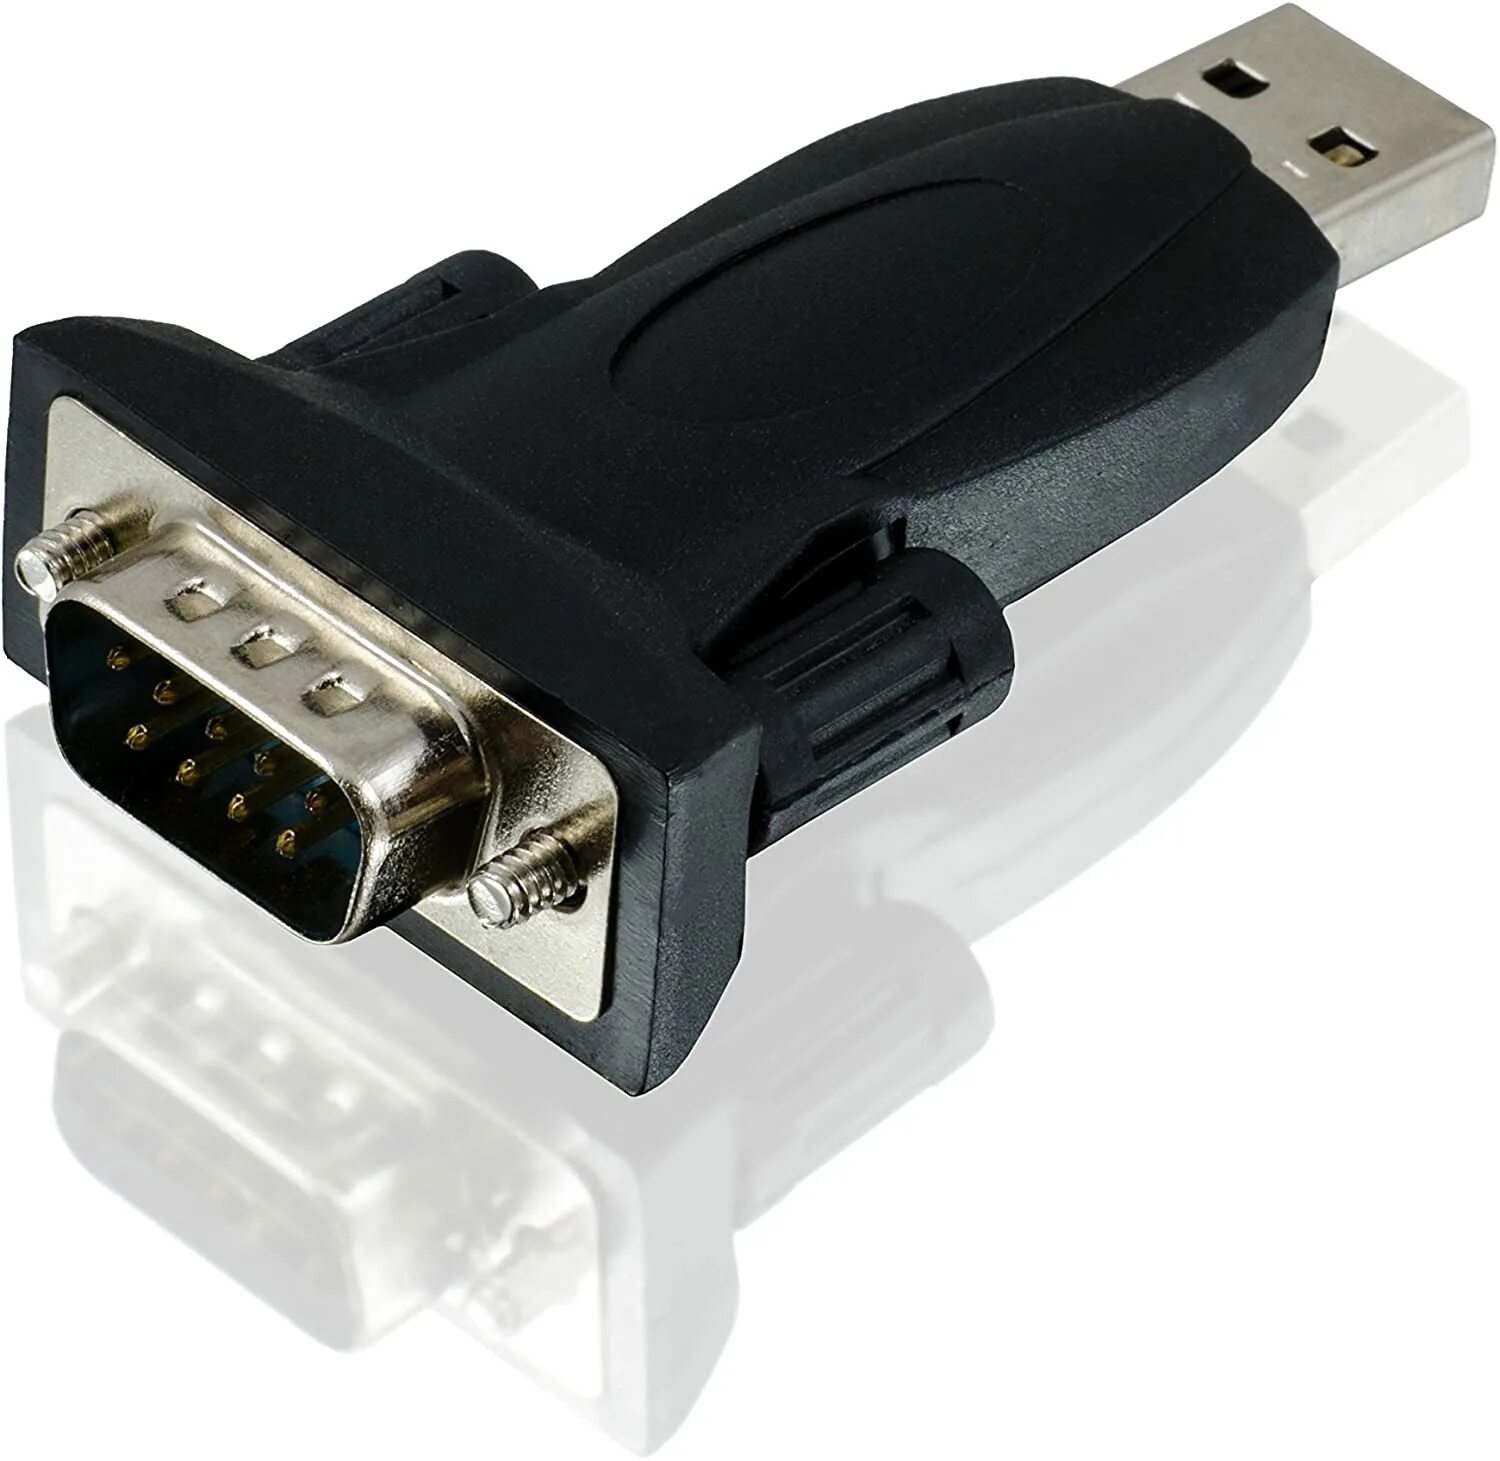 Купить переходник com com. Адаптер USB-rs232. USB-rs232 prolific pl-2303. Переходник 232 мама на юсб. USB com rs232 переходник Hama.